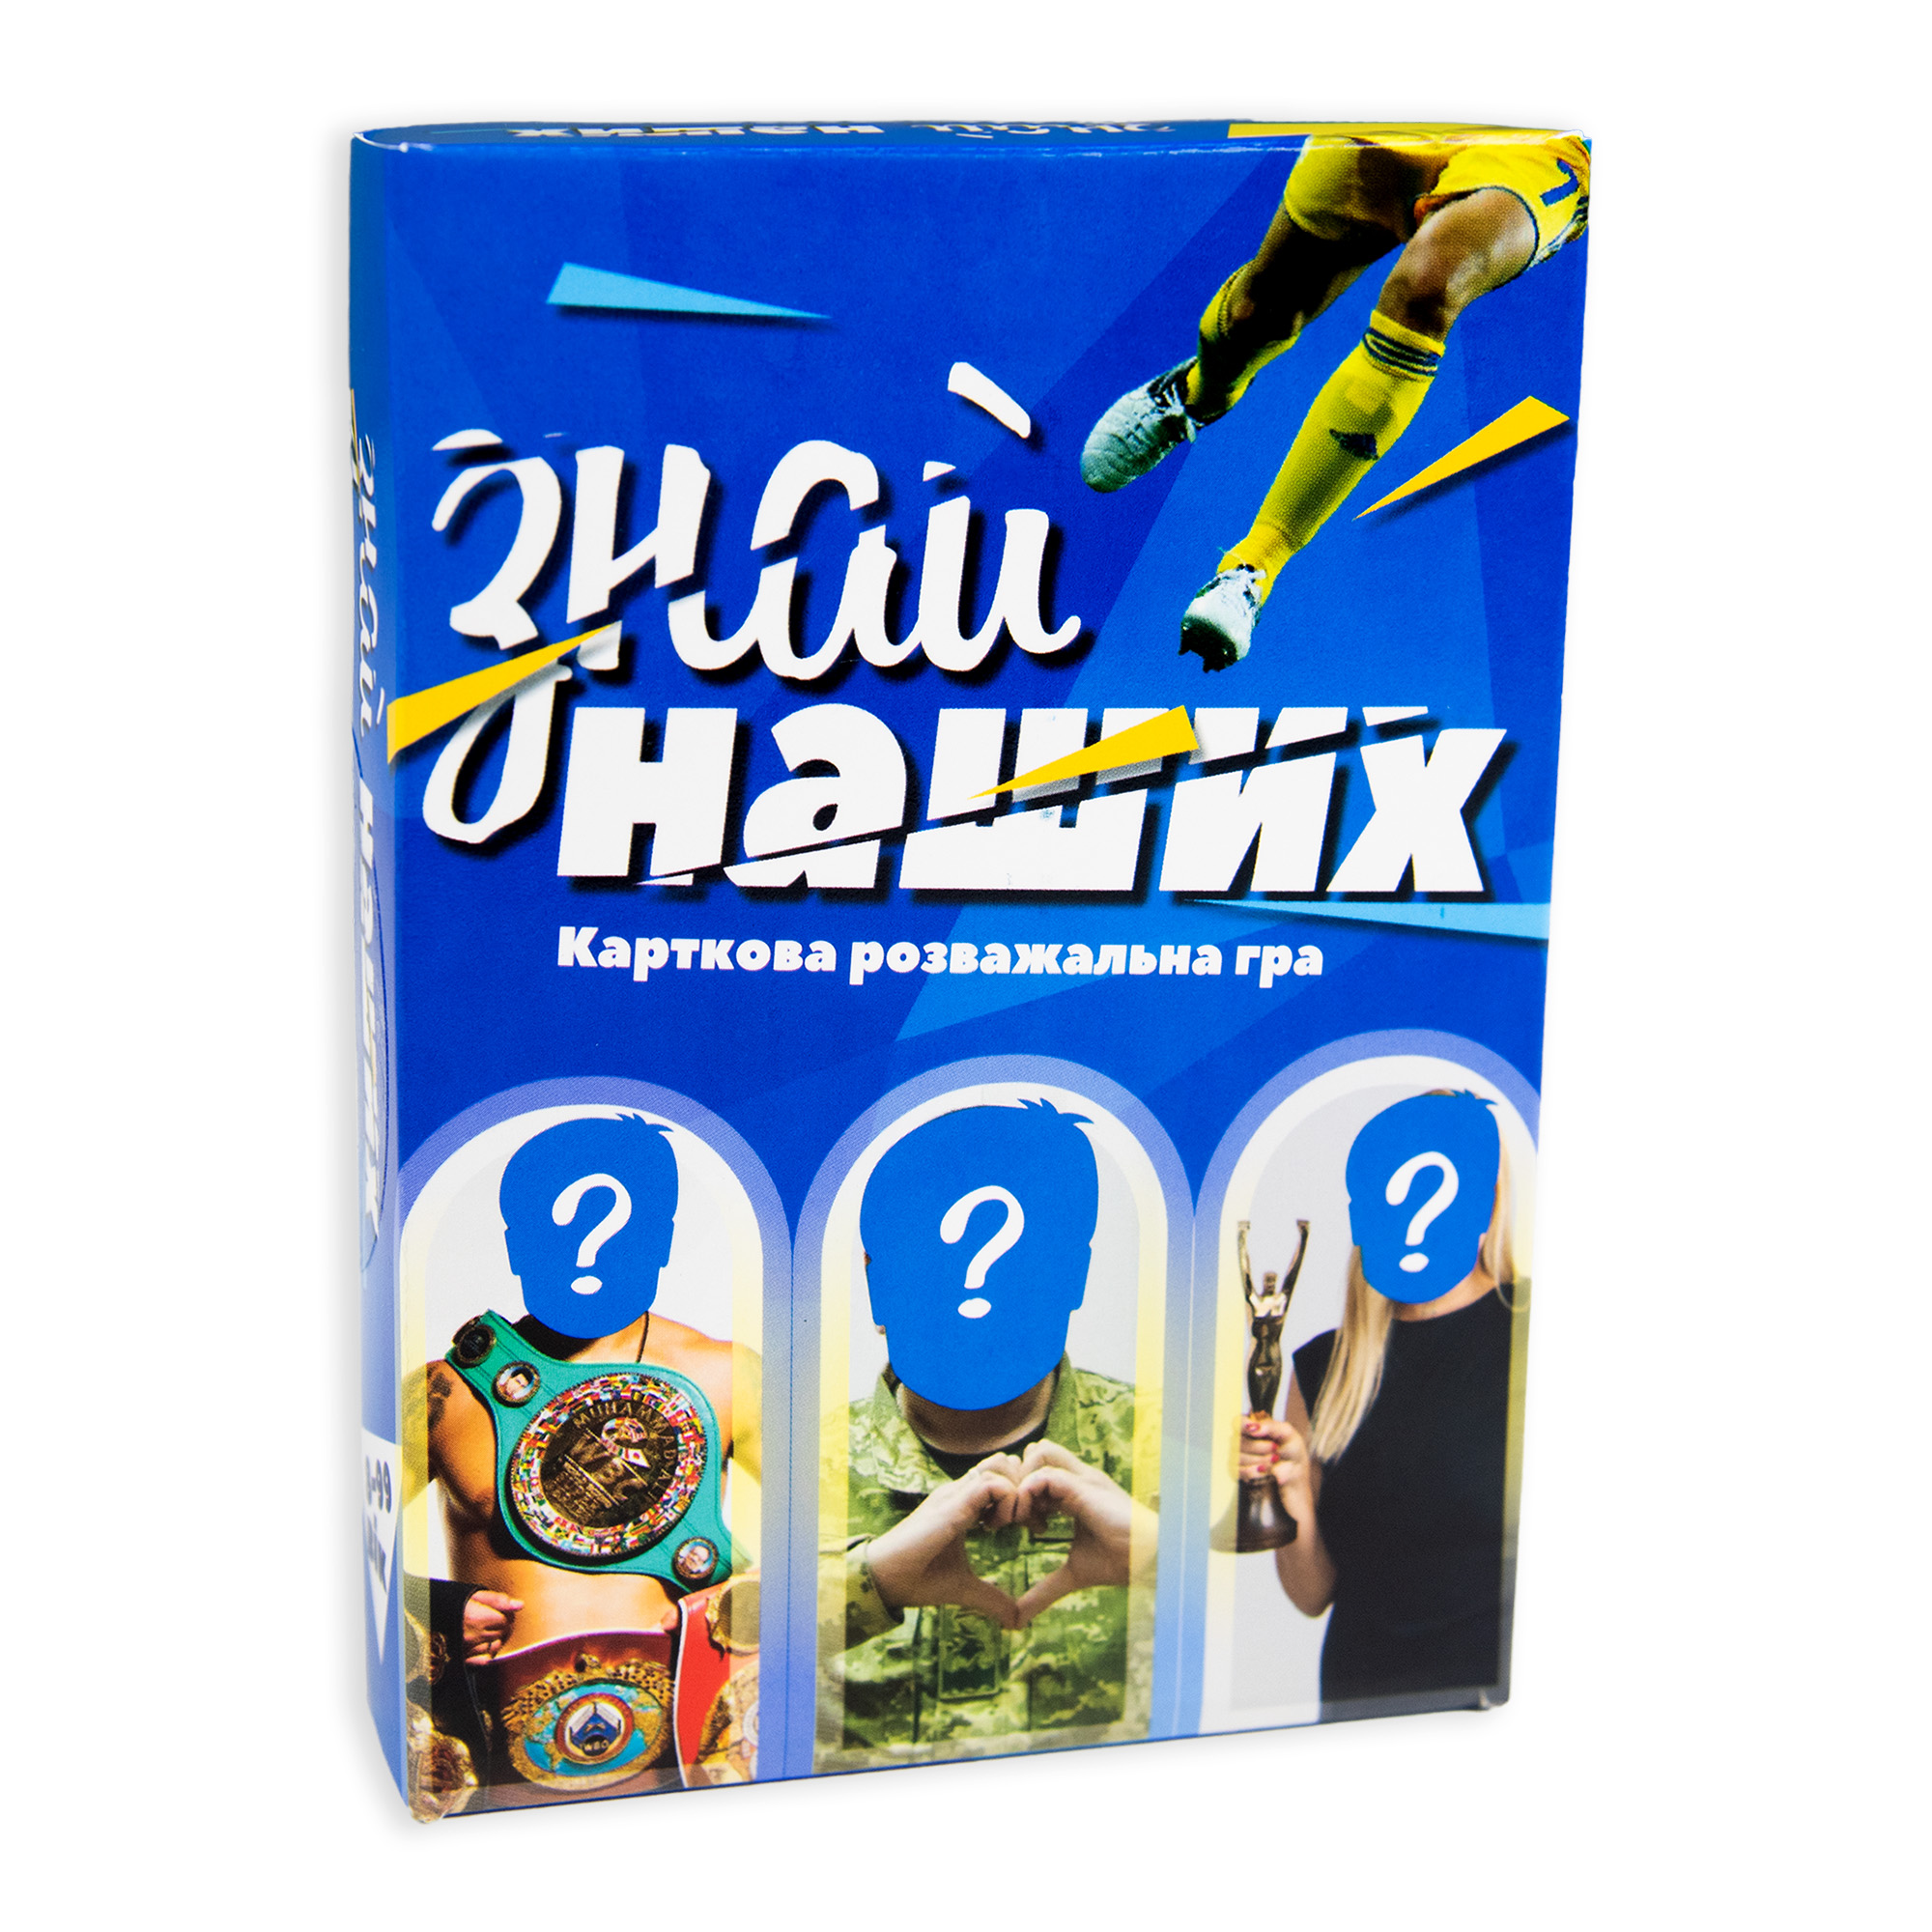 Настольная игра Strateg Знай наших развлекательная игра на украинском языке (30434)